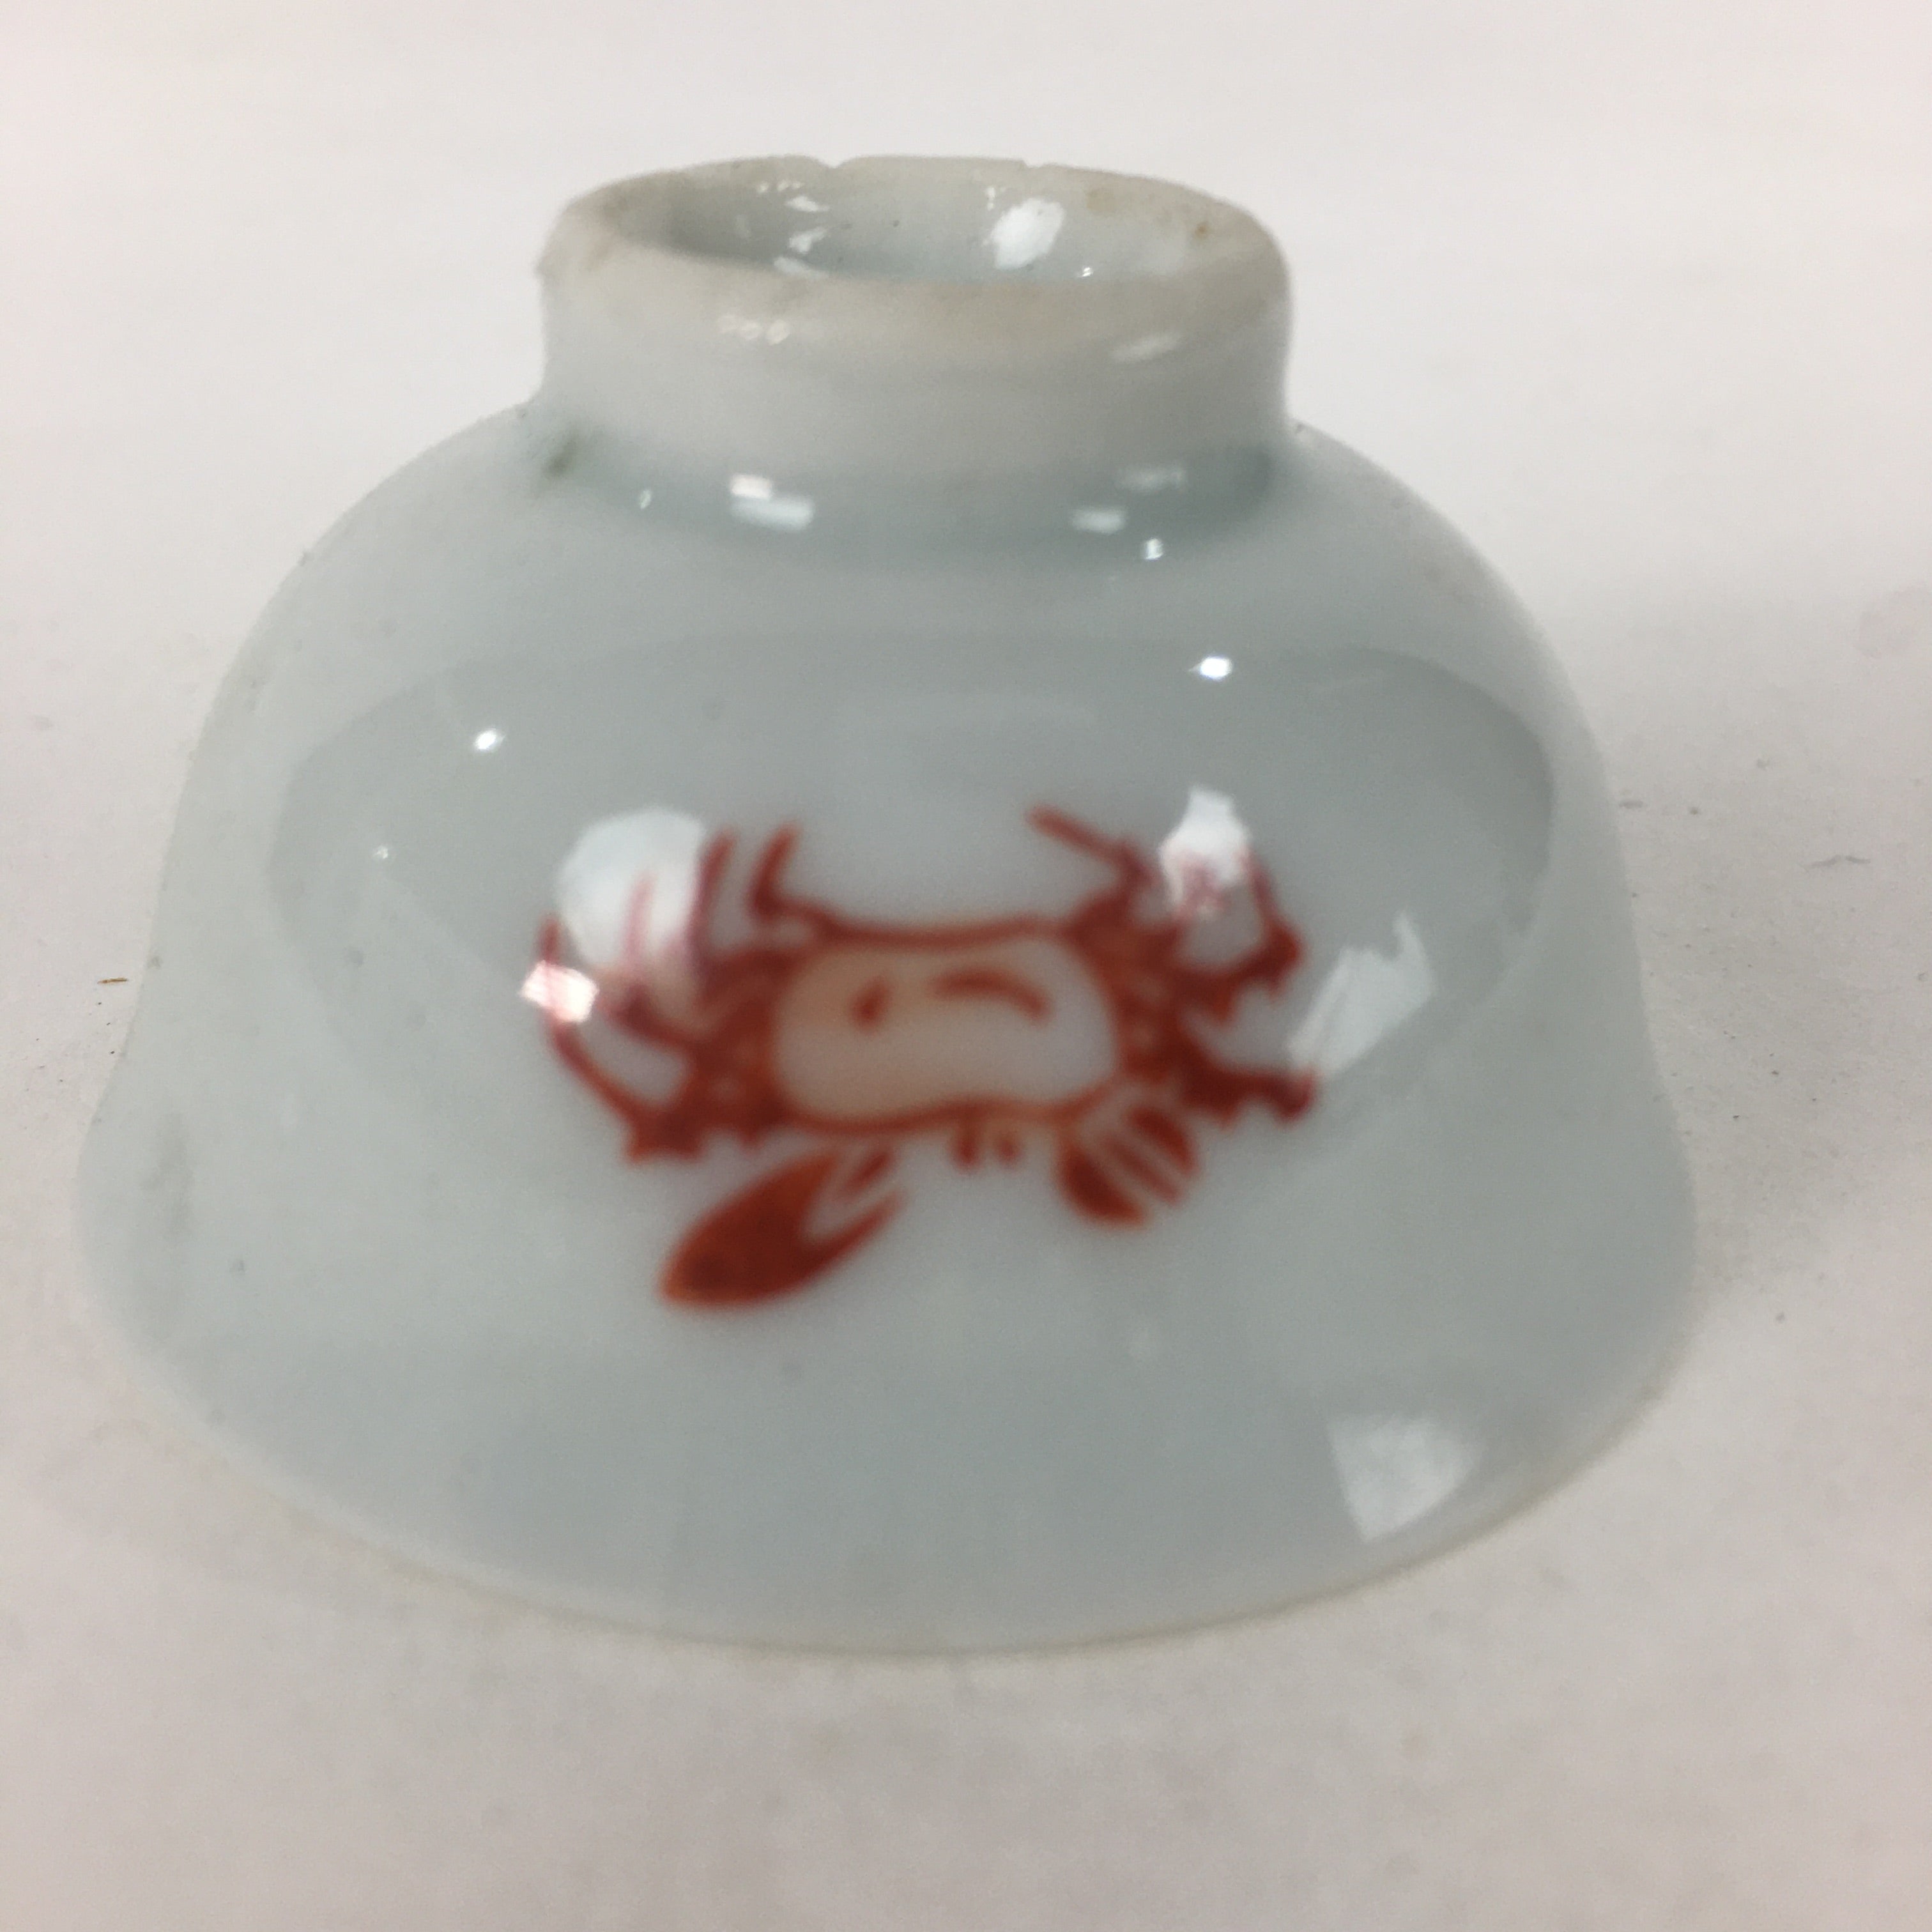 Japanese Porcelain Sake Cup Vtg Red Crab Design White Guinomi Ochoko G38